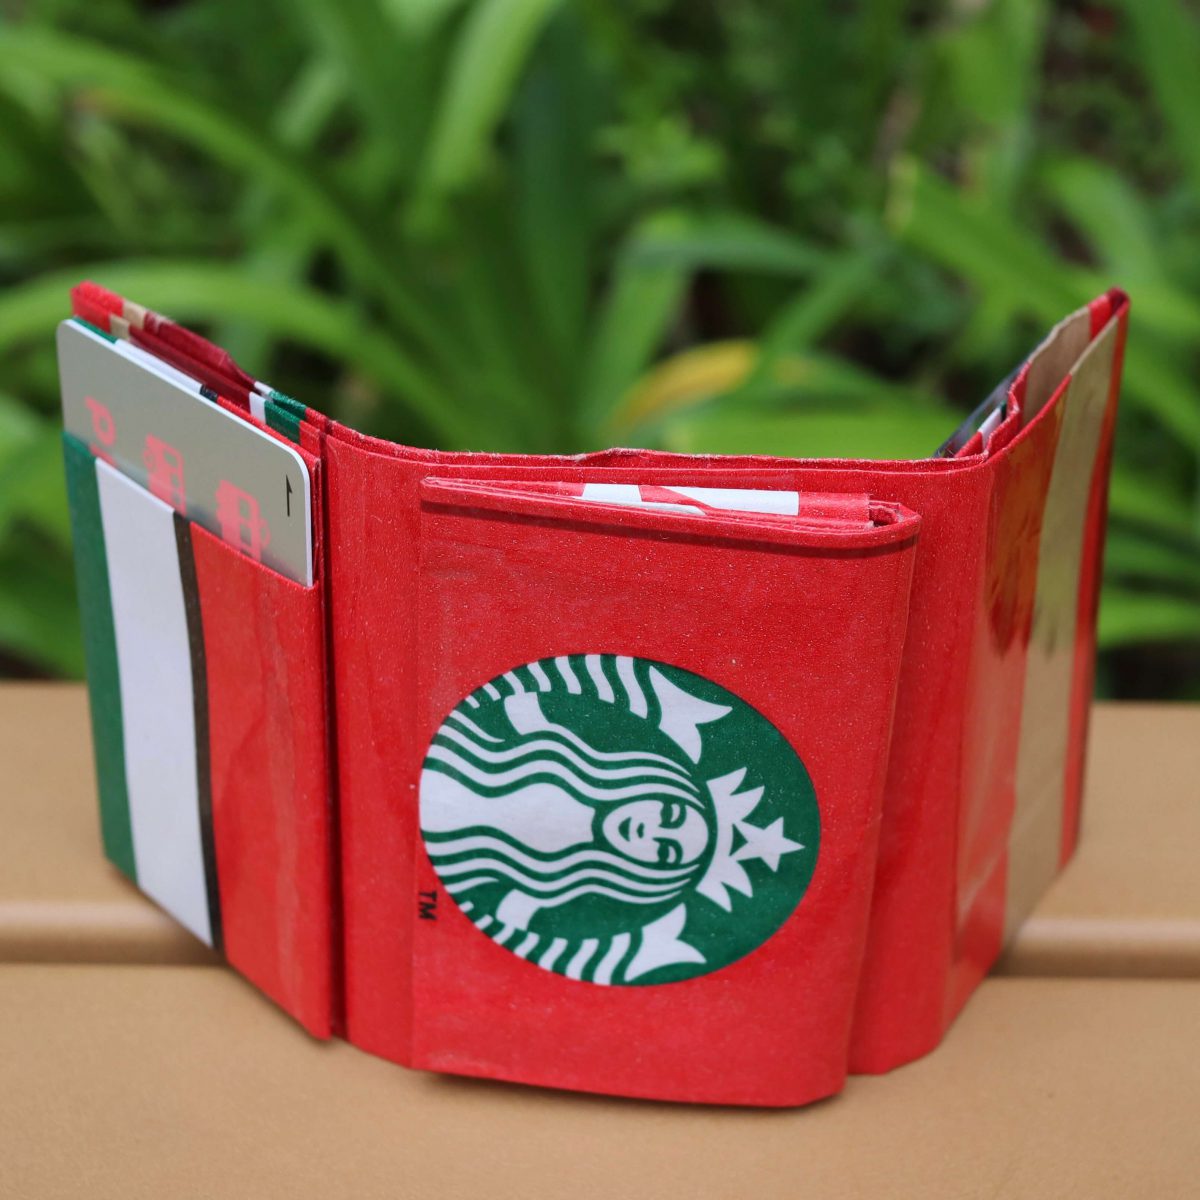 鎌倉 三つ折財布をお気に入りの紙袋から作ろう 多機能で超小型 カード入れにも 一般社団法人 日本エコロジークラフティド協会一般社団法人 日本エコロジークラフティド協会